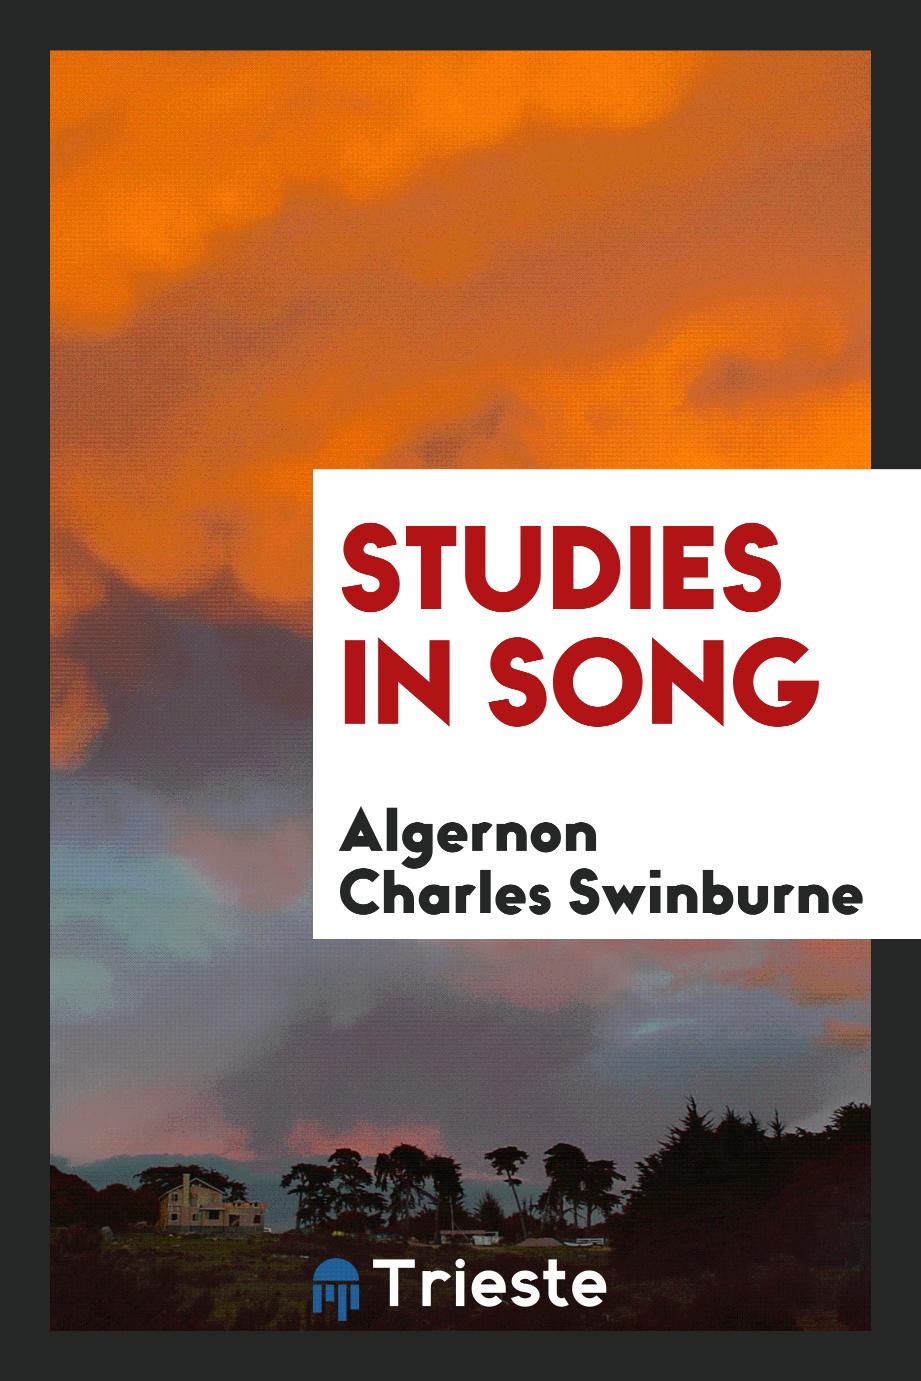 Studies in song